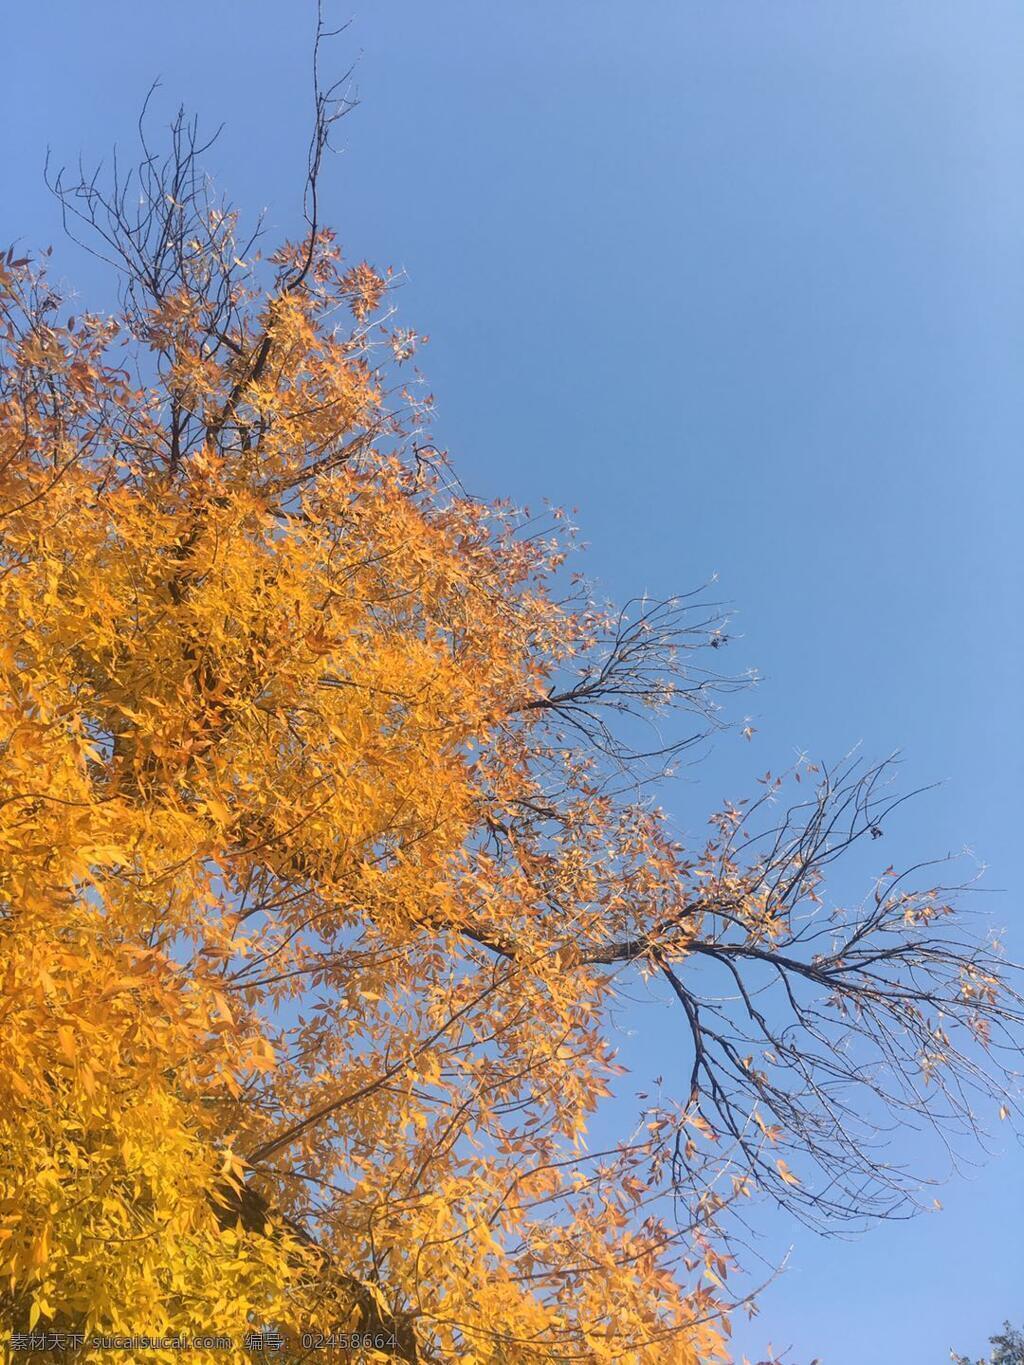 北京 秋天 北京的秋天 秋天枫叶 金黄树叶 金黄枫叶 秋天美景 自然景观 自然风景